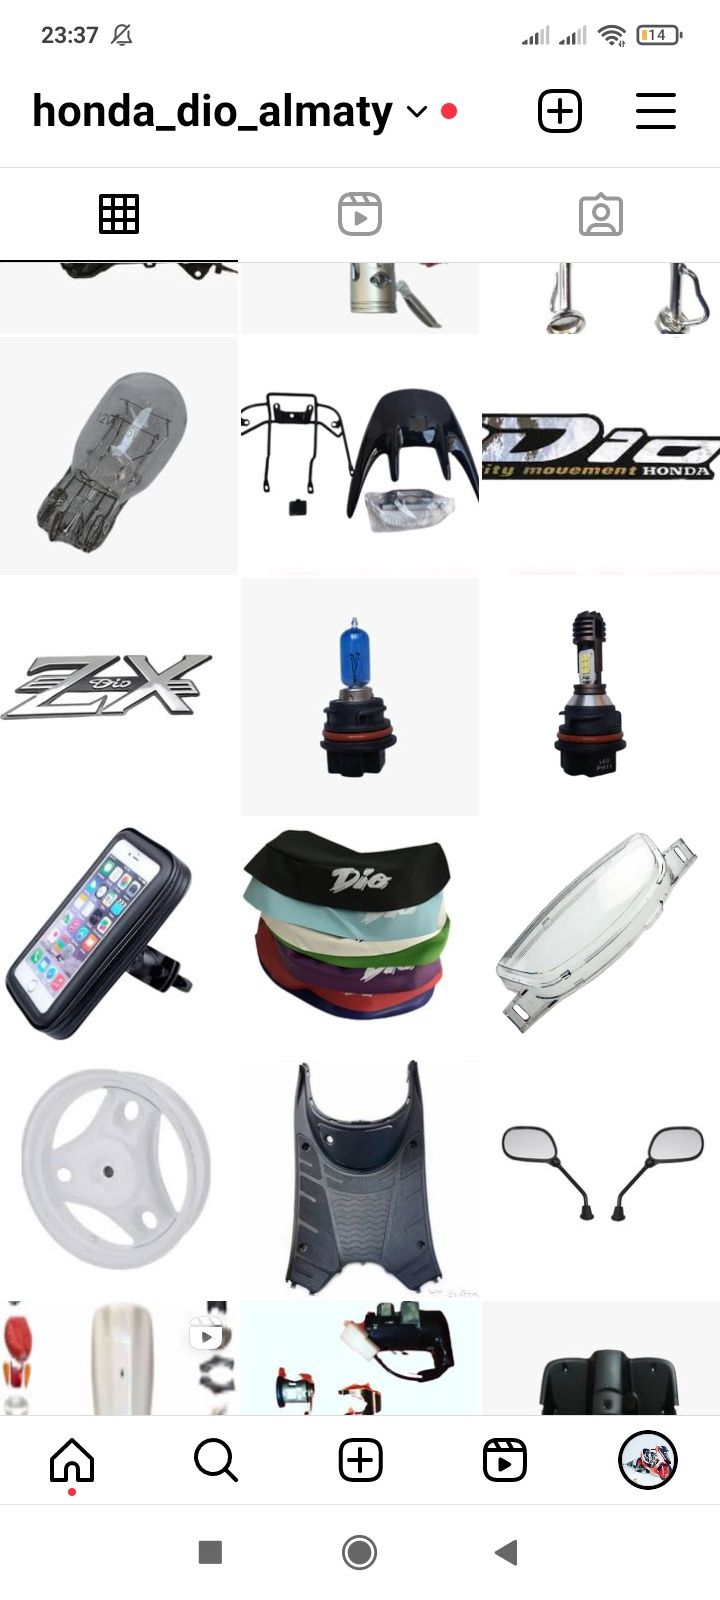 Honda Dio амортизатор,вилки,травесса, мотозапчасти, диск,пластик, клюв